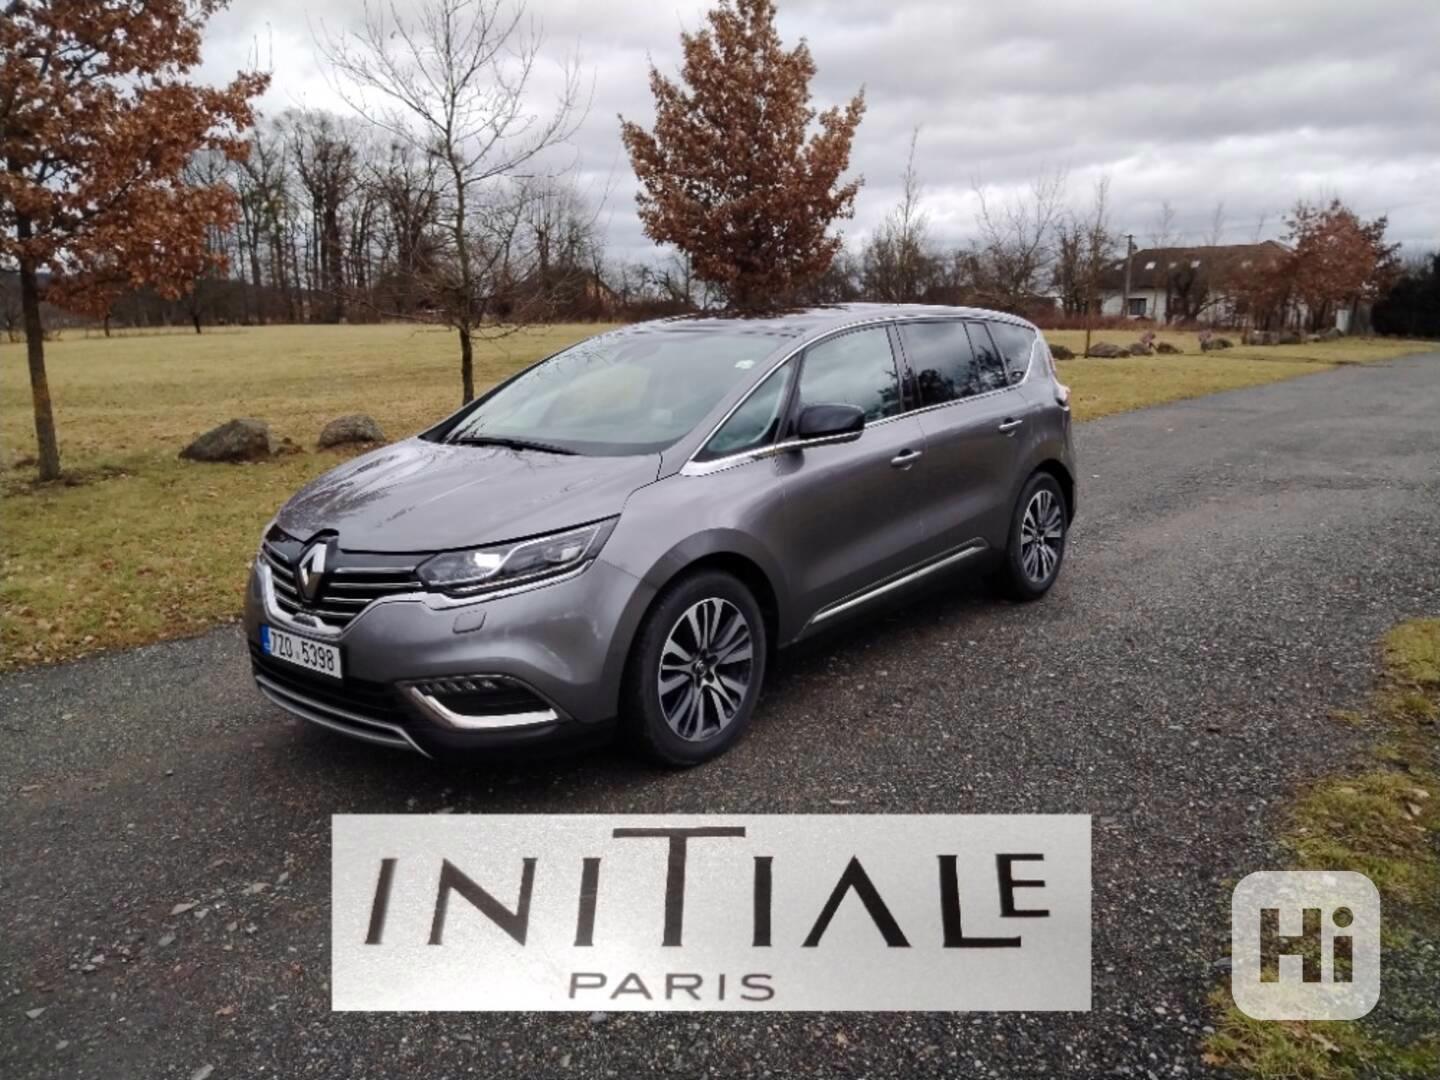 Renault Espace V, INITIALE PARIS, 147 kW, 7 míst - foto 1